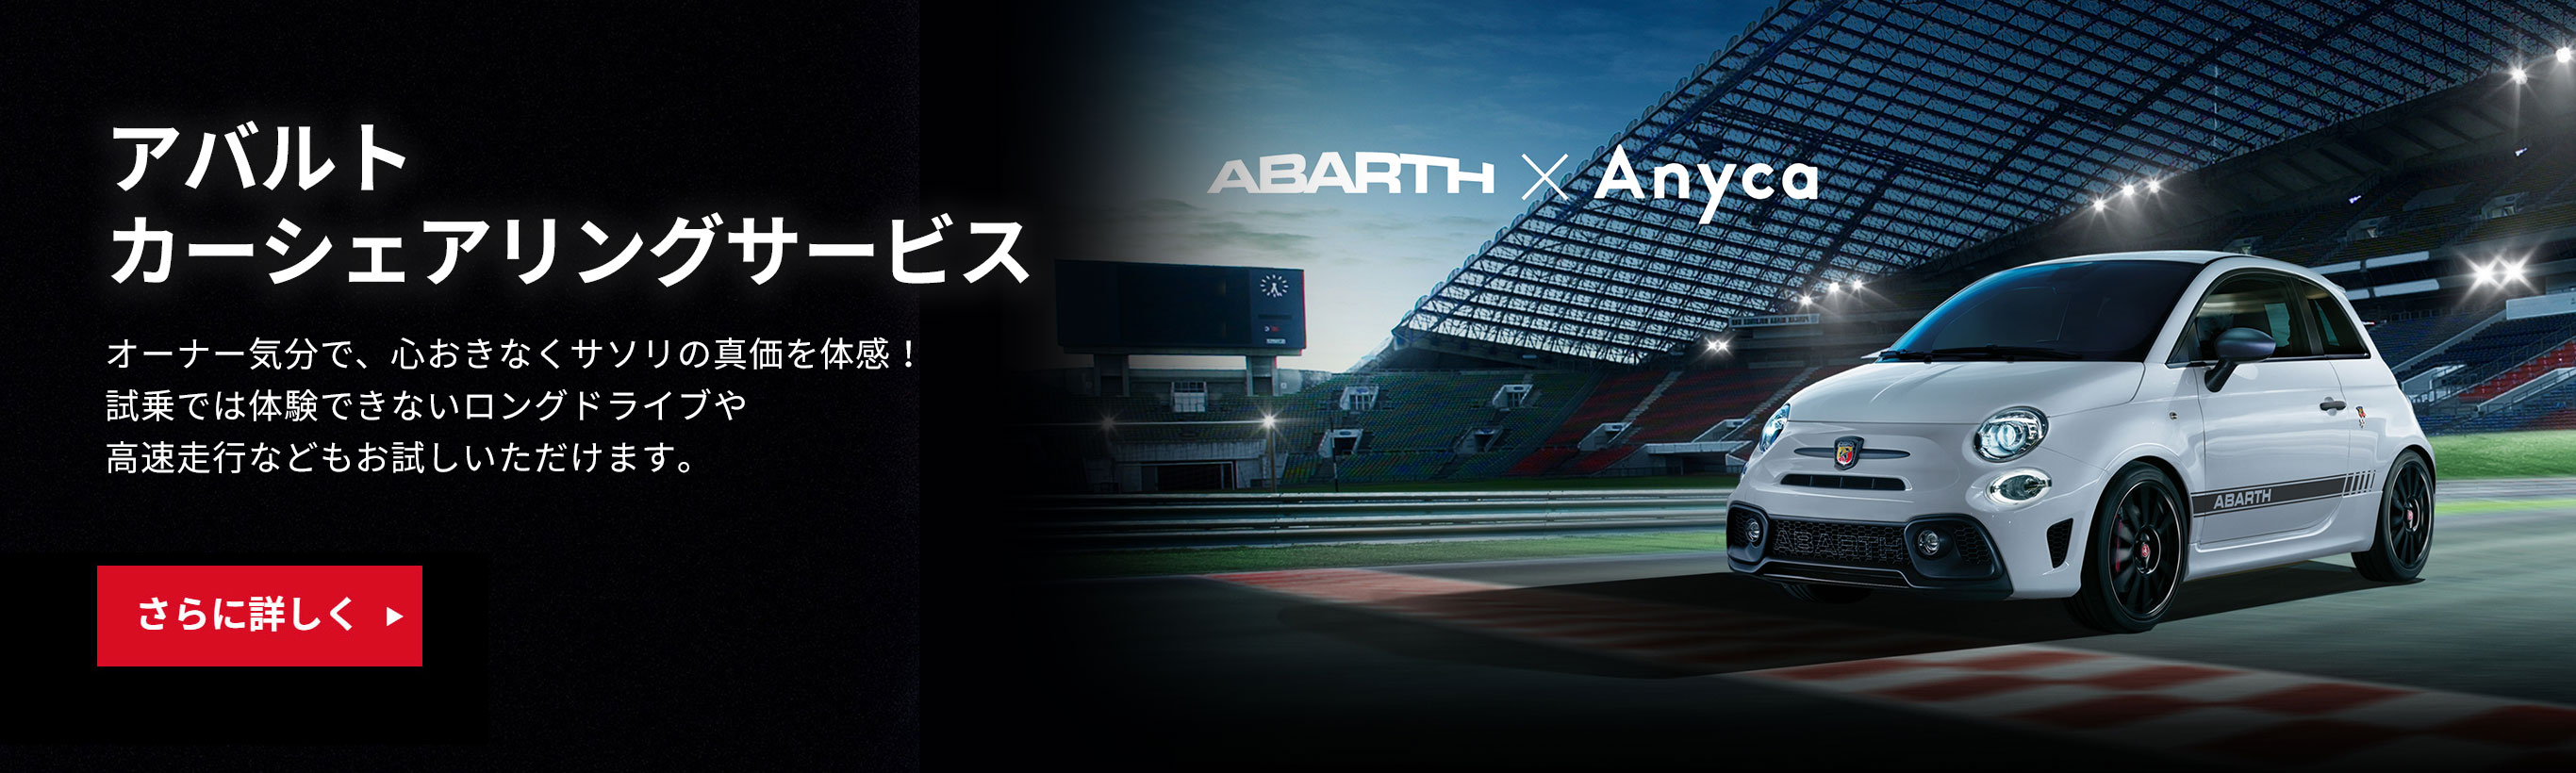 フィアット アバルト広島 Fiat Abarth Official Dealer Site